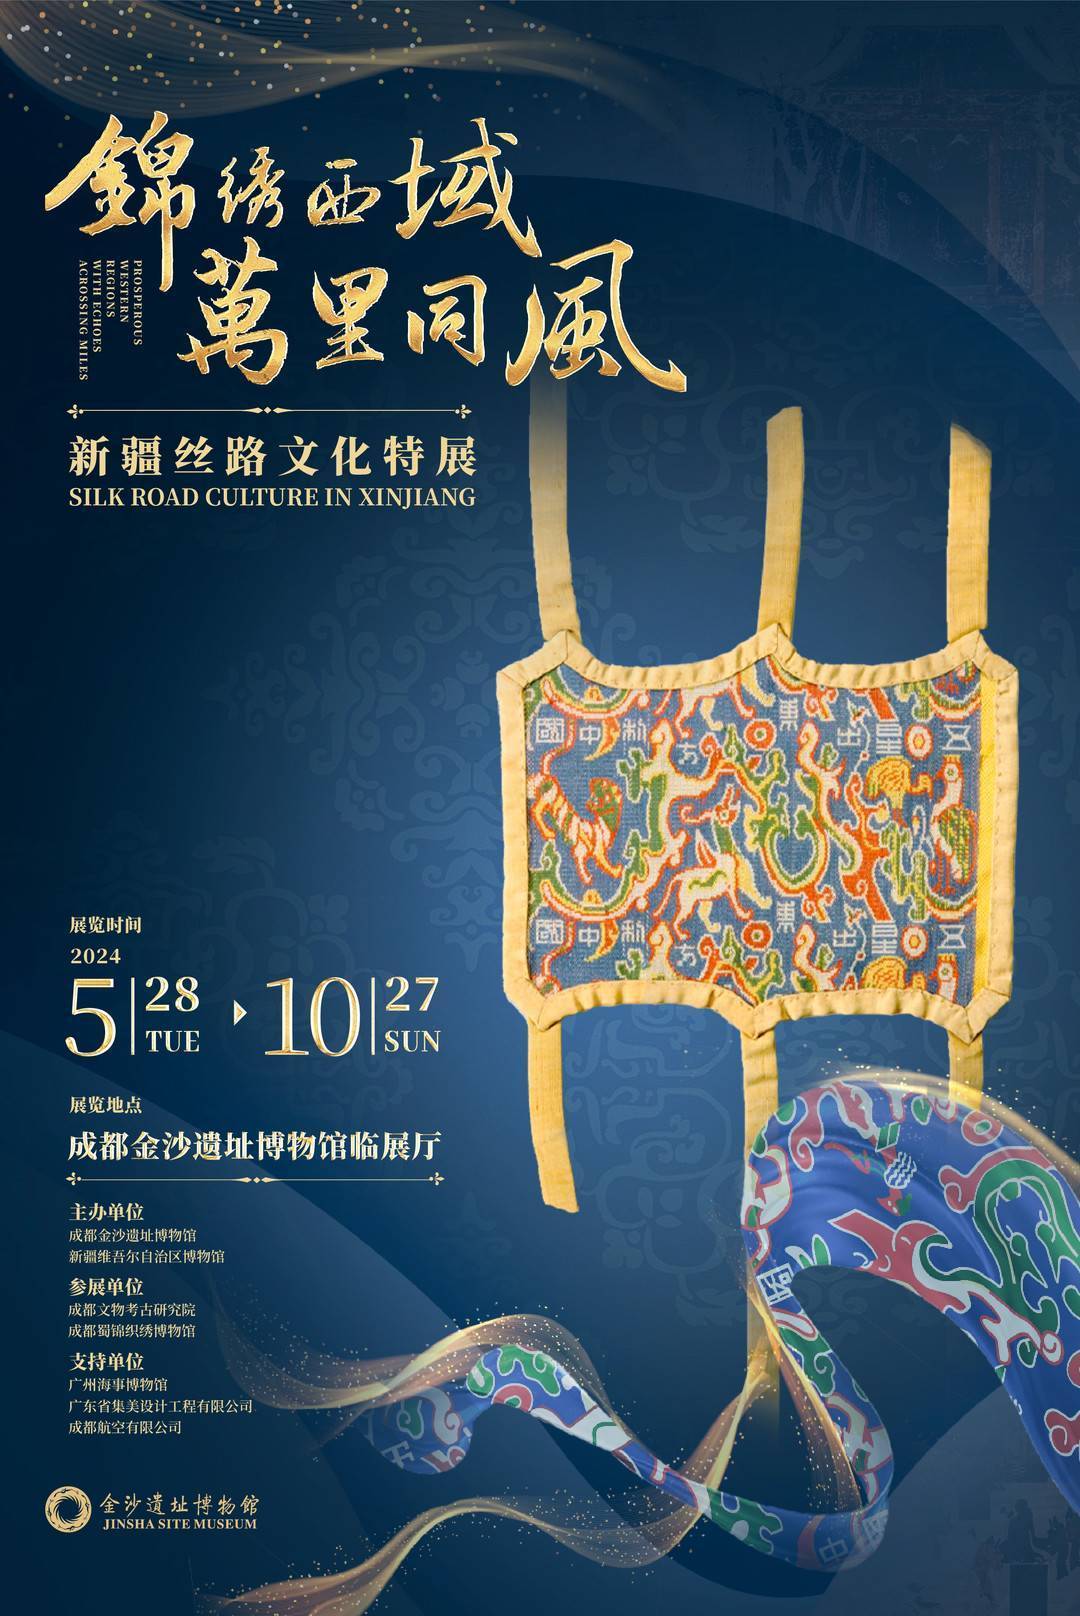 感受丝绸之路的繁盛景象,新疆丝路文化特展5月28日在金沙启幕